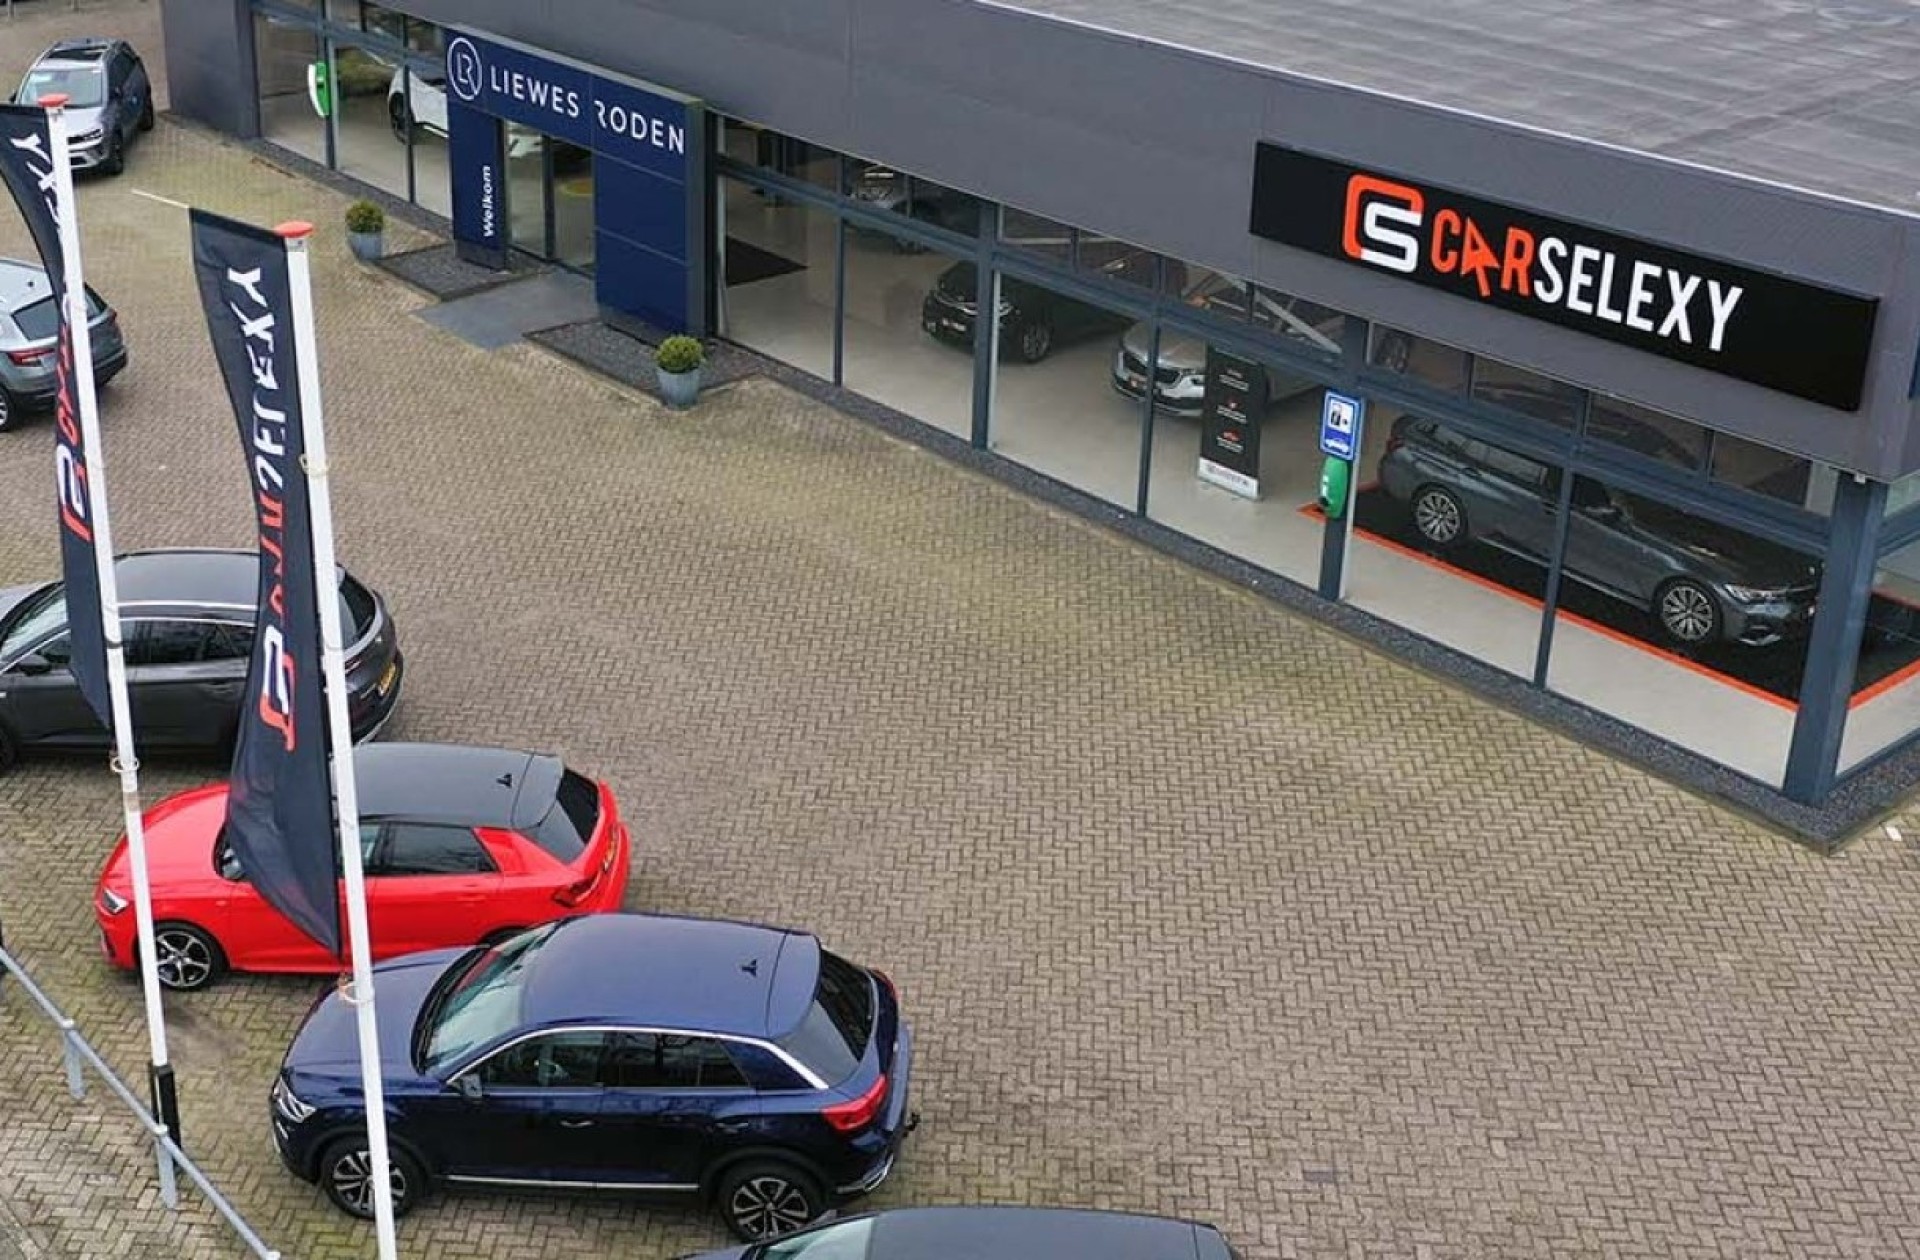 Carselexy dealer Autobedrijf Liewes Roden B.V. in Roden in de provincie Drenthe